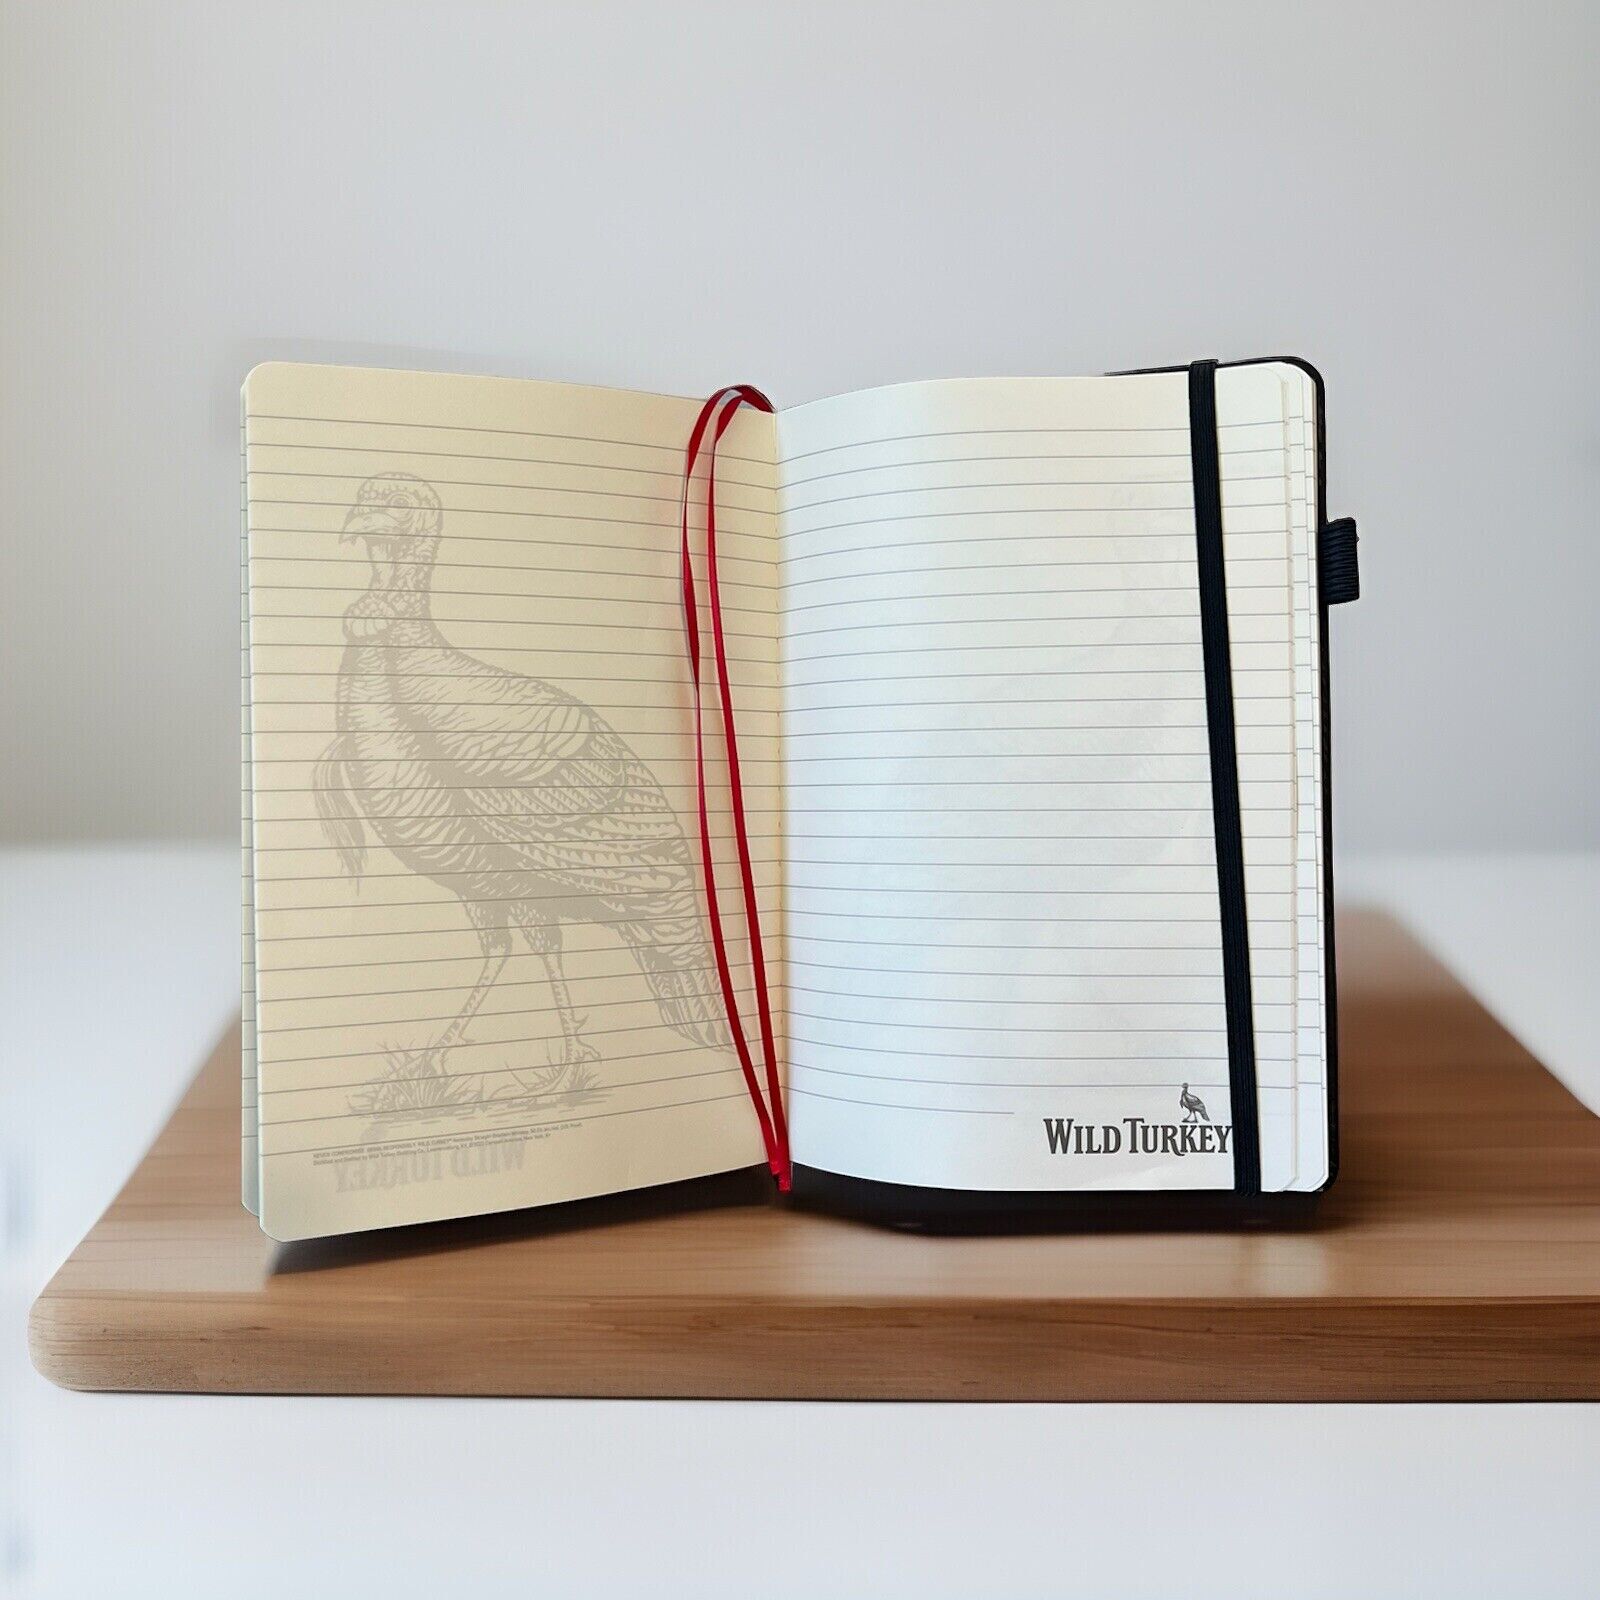 Wild Turkey Bourbon Notebook - New